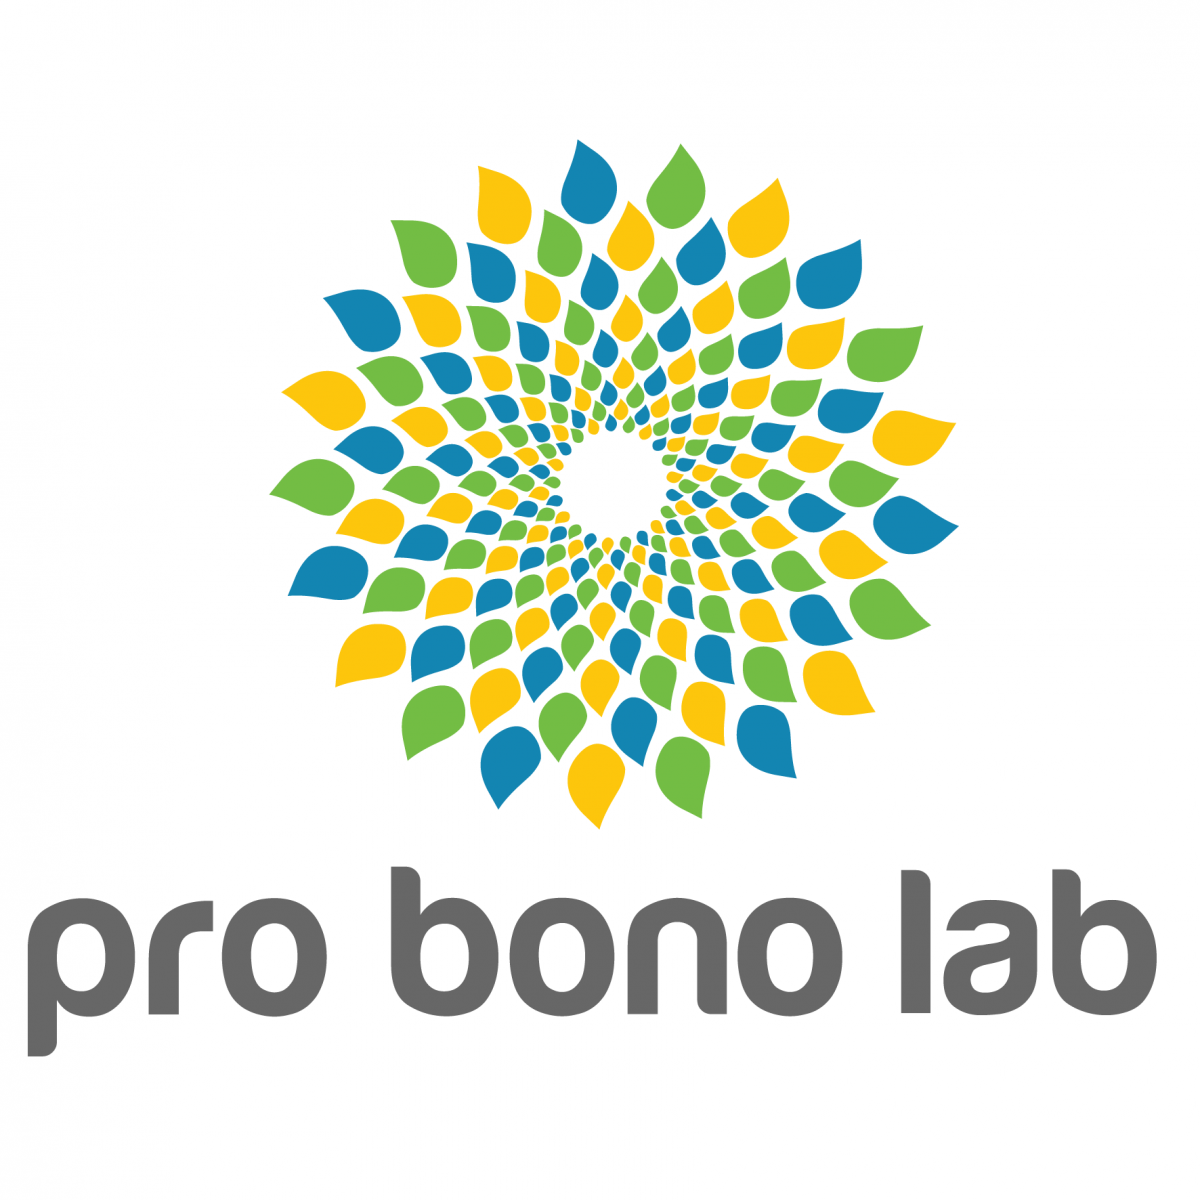 Pro Bono Lab